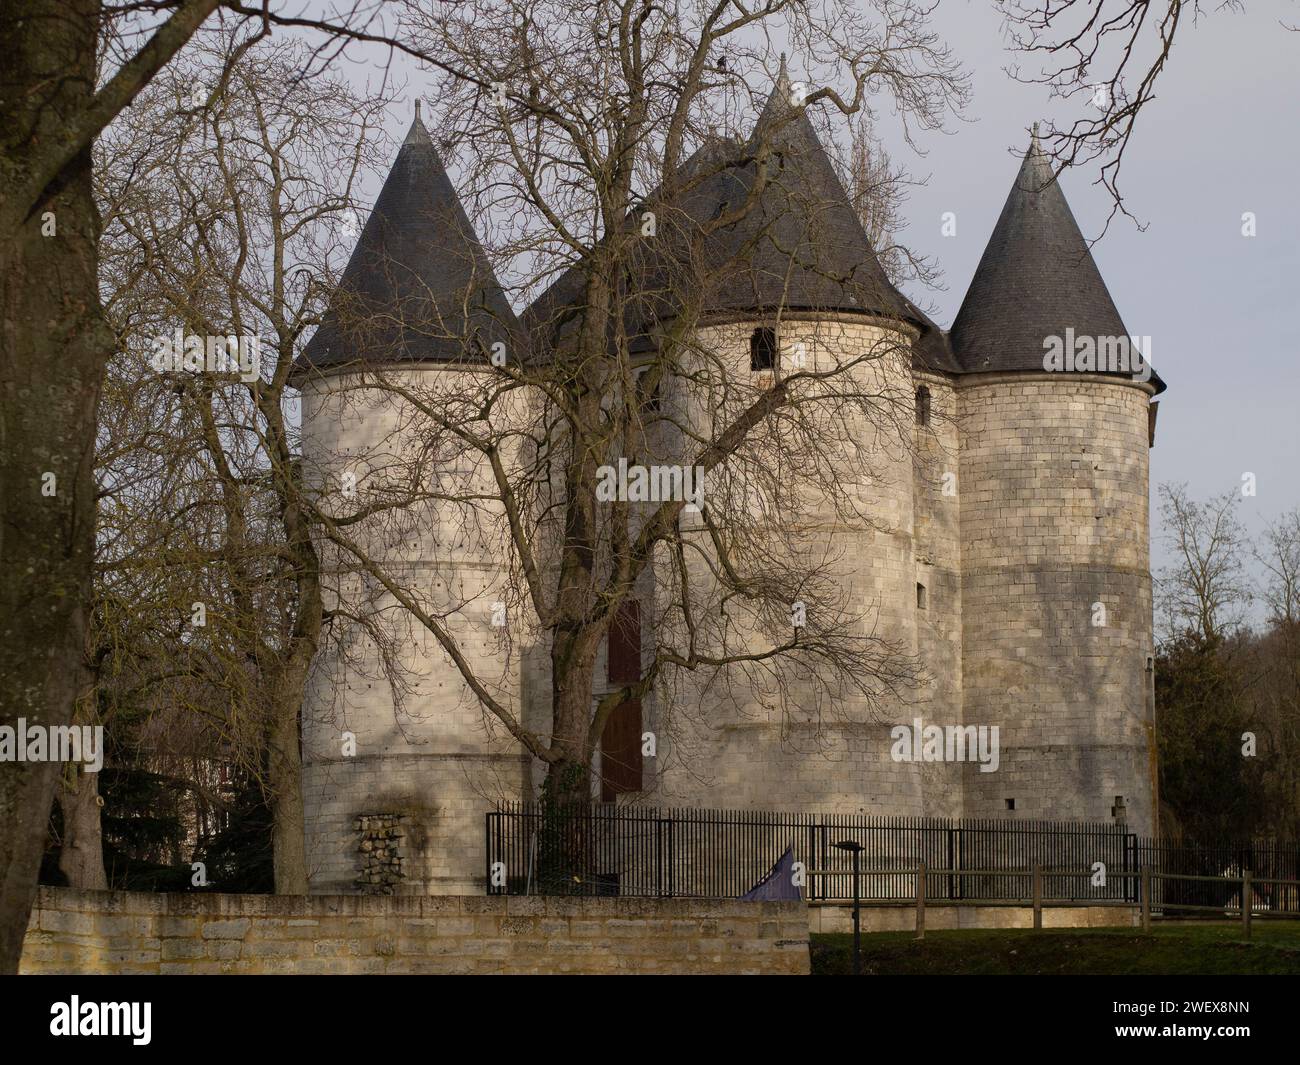 Château des tourelles à Vernon, Eure, France | Château médiéval en pierre avec tours jumelles entourées d'arbres, sous un ciel dégagé. Banque D'Images